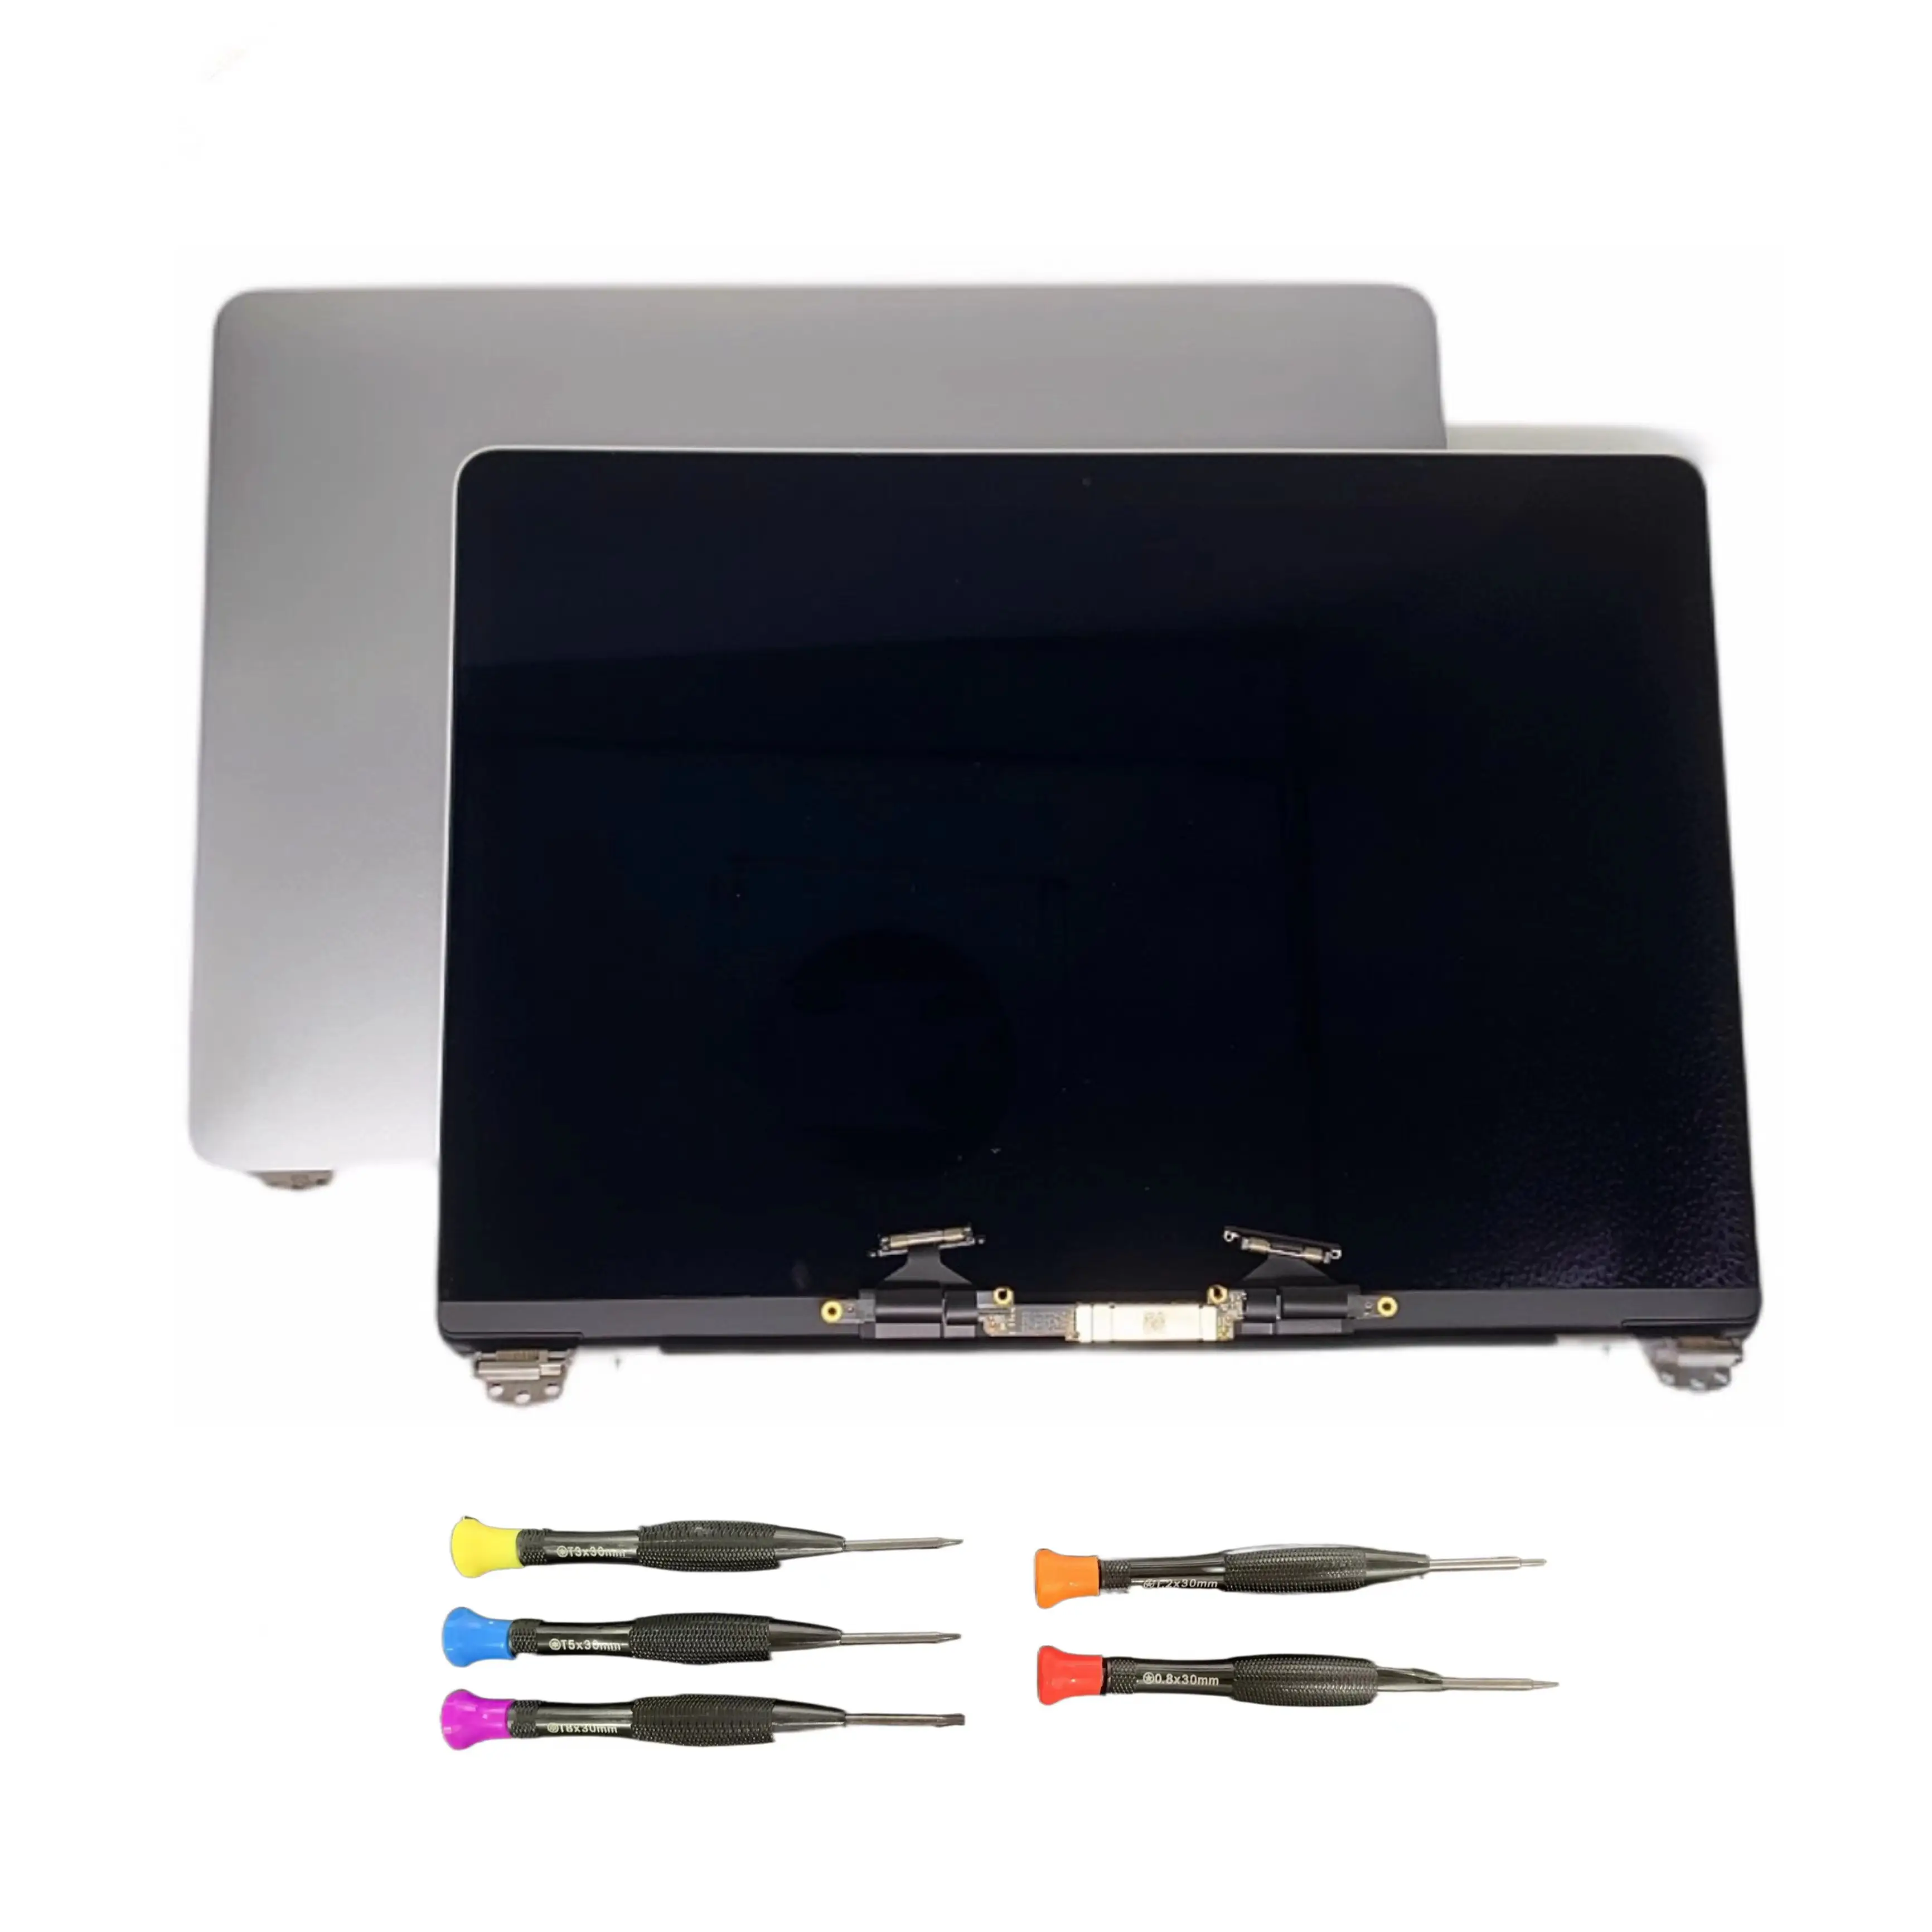 2019 Jaar Originele Nieuwe A2159 Lcd Montage Voor Macbook Pro Retina 13 "A2159 Scherm Emc 3301 Ruimte Grijs zilver Vervanging